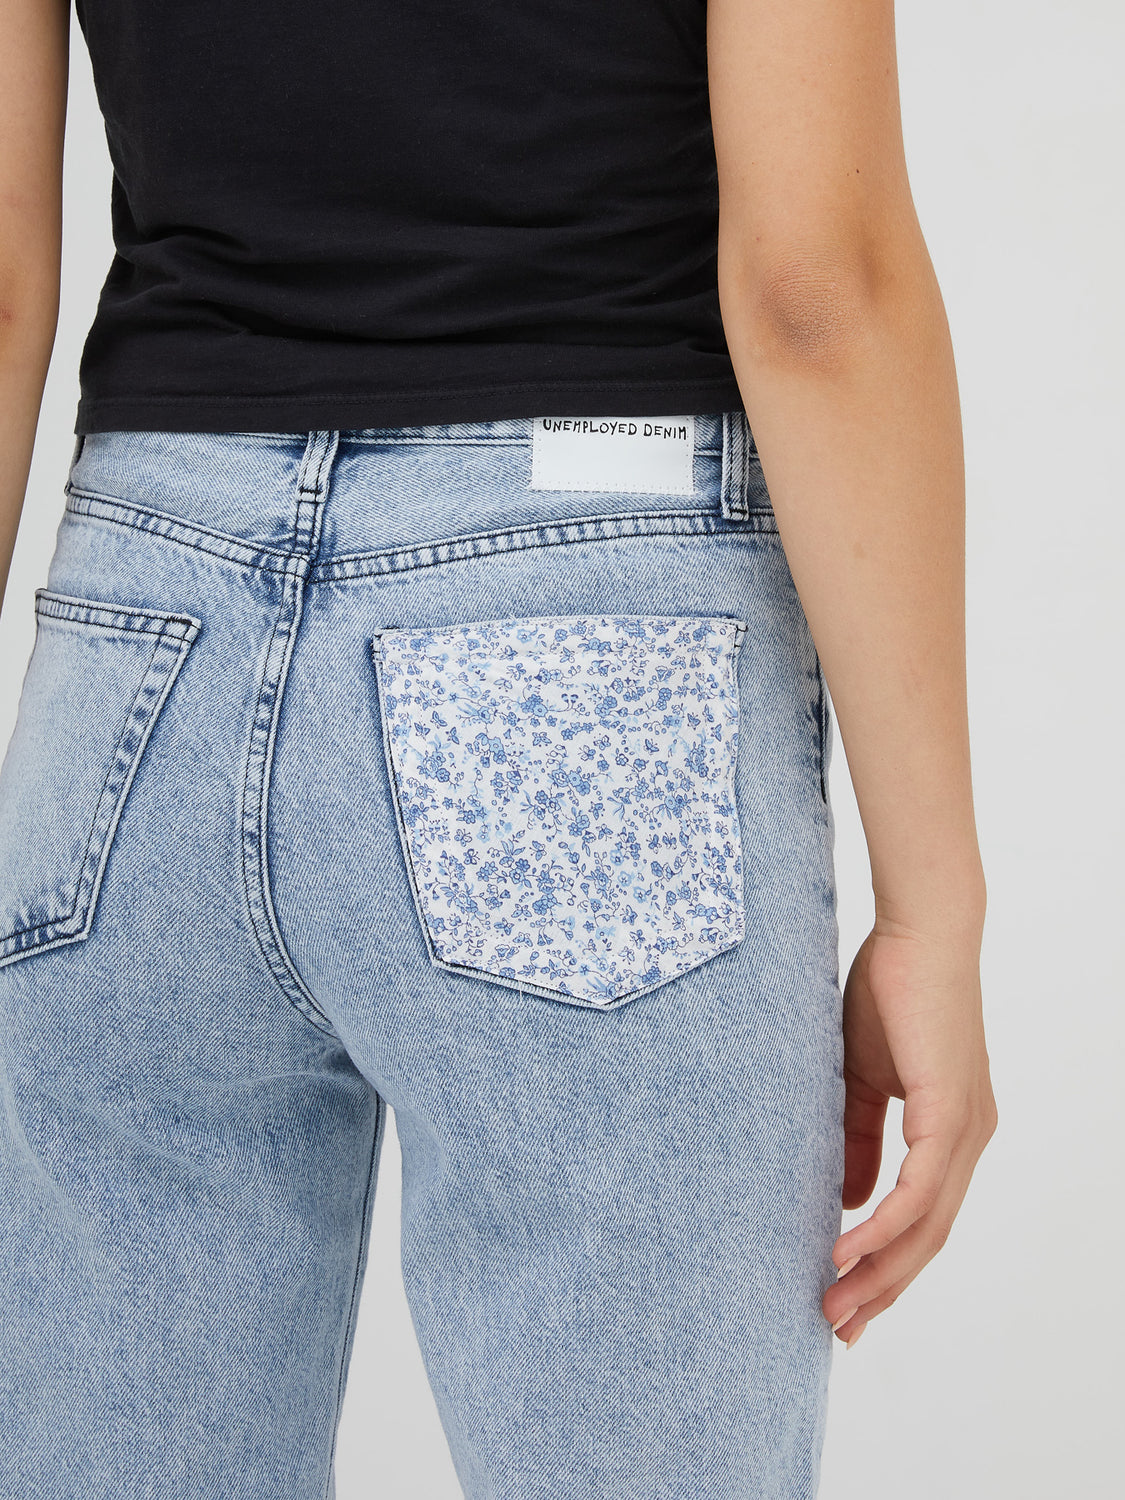 Floral Pocket Jean